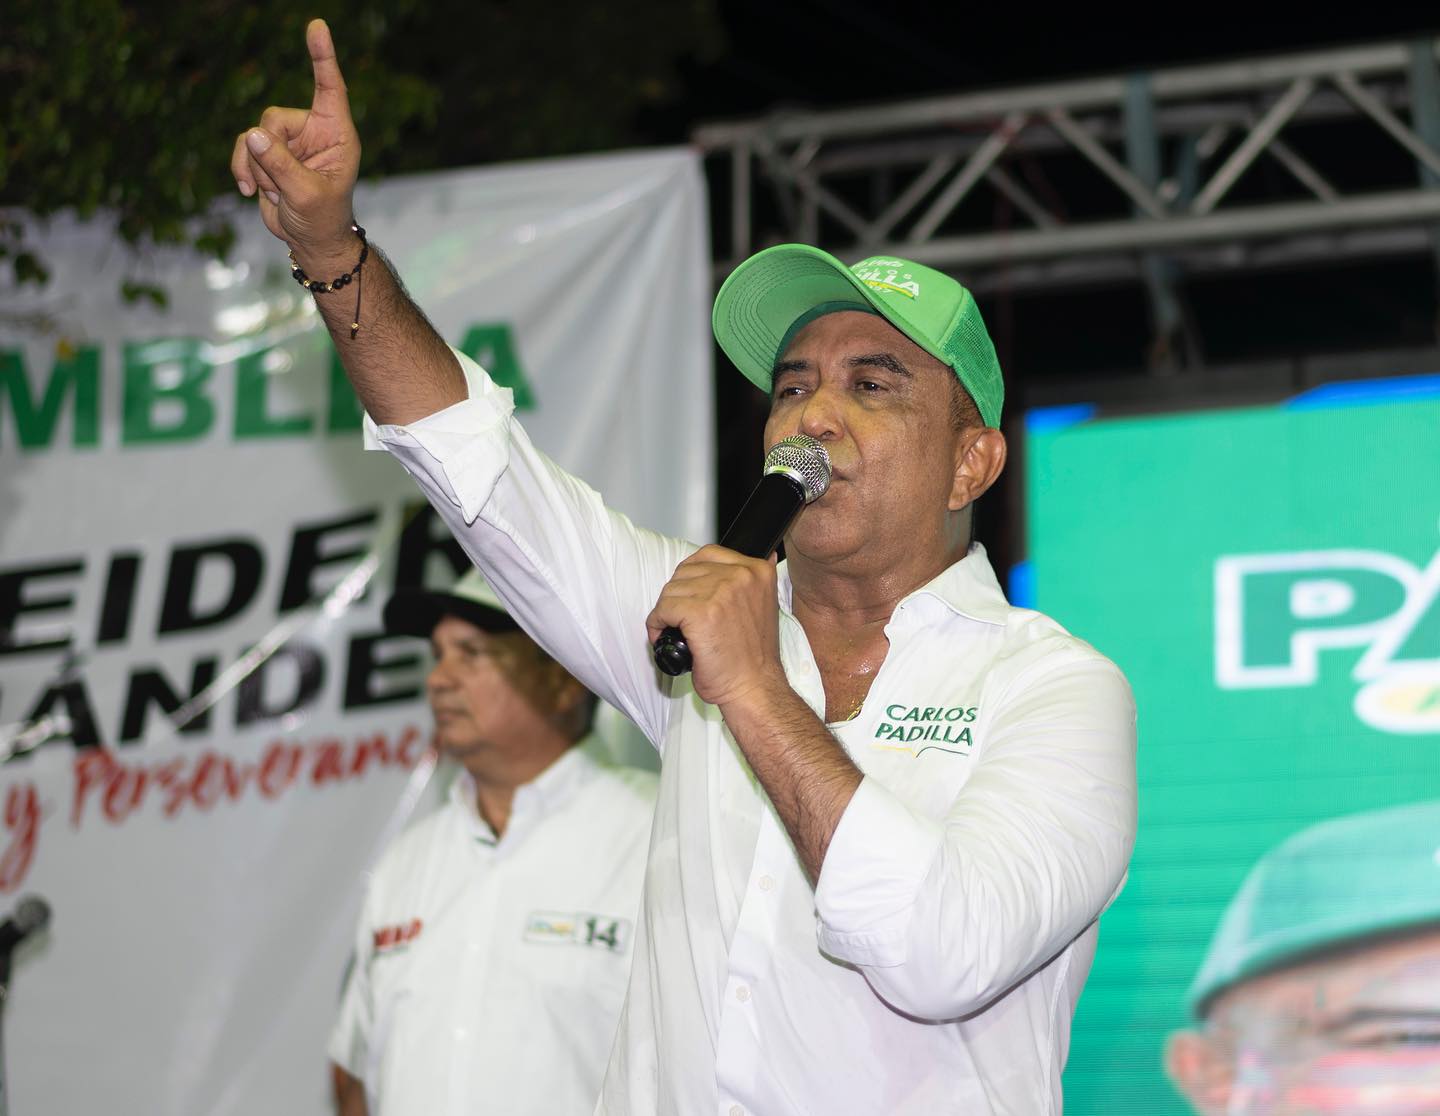 “Estamos cansados que gobierno  Tete siempre  de malas noticias”: Carlos Padilla